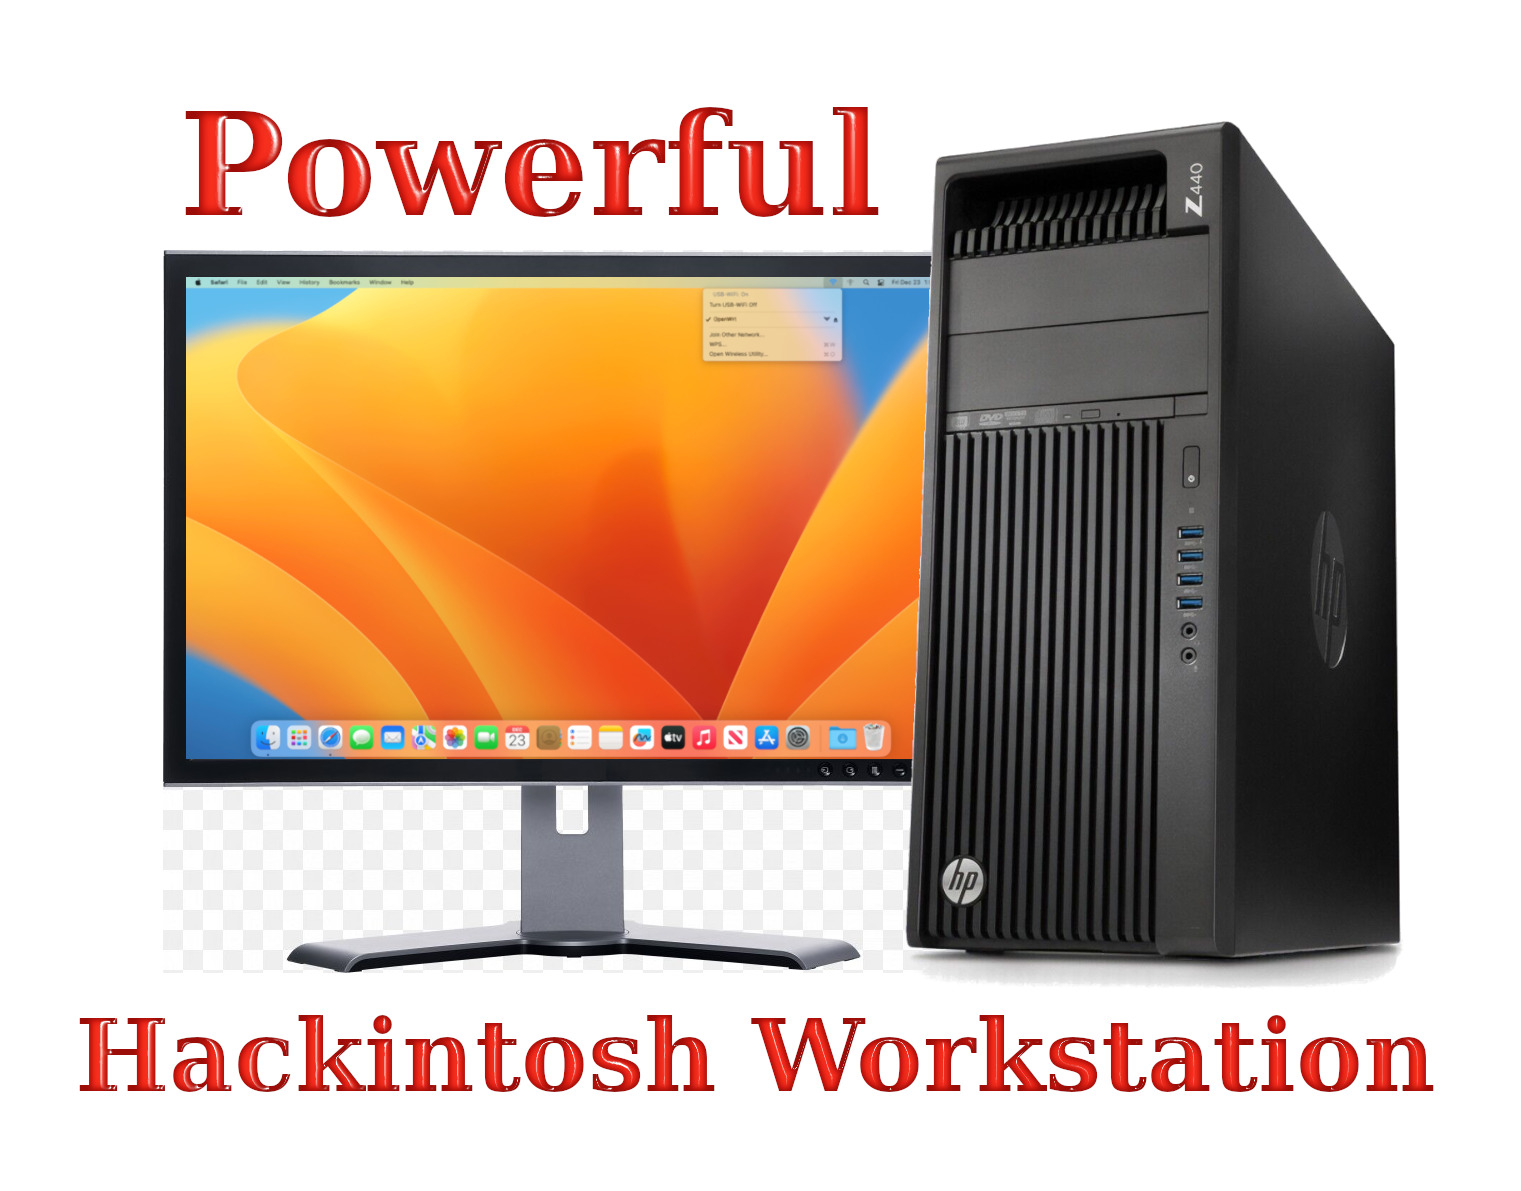 Hackintosh Workstation - HP Z440 Xeon E5-1603 v3 2.80GHz